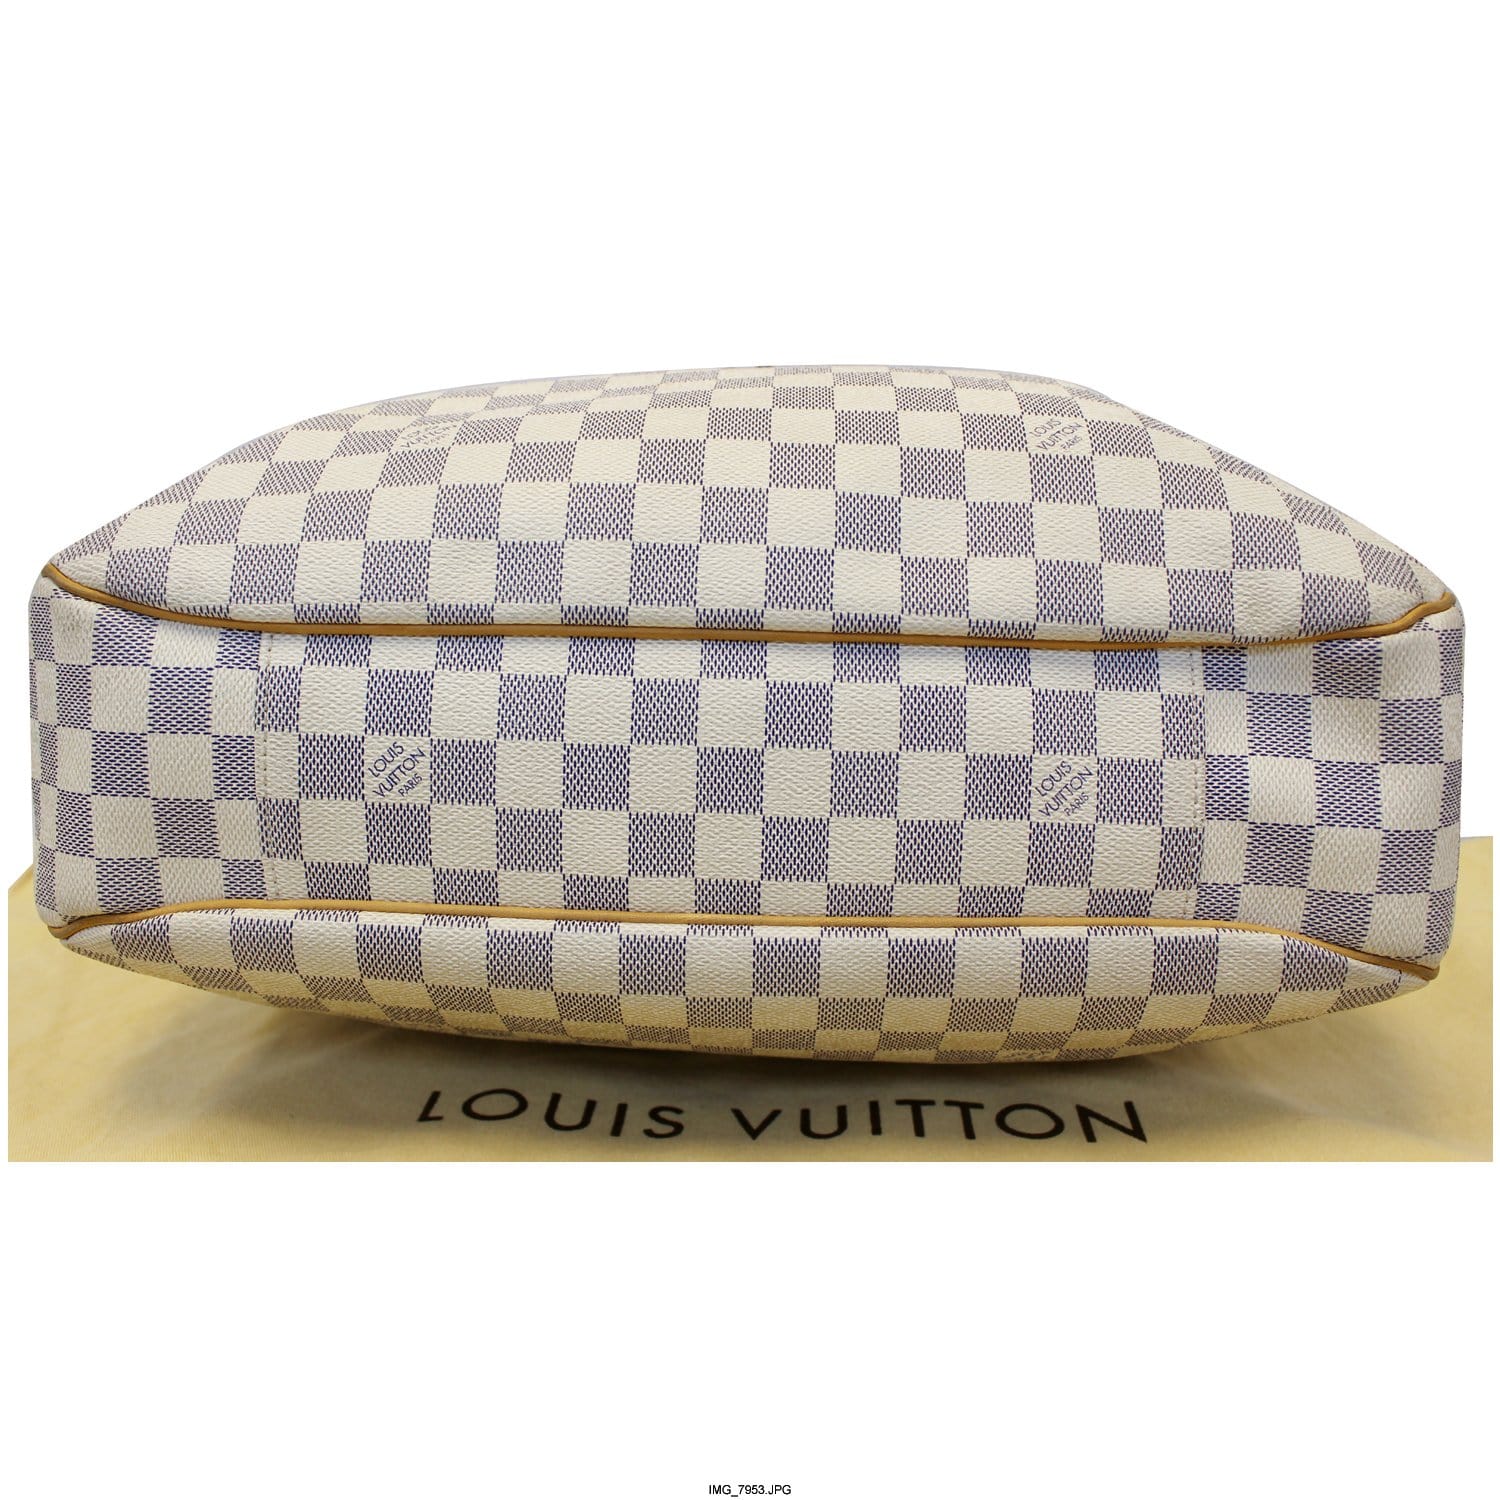 LOUIS VUITTON Evora MM Damier Azur Tote Shoulder Bag Excellent